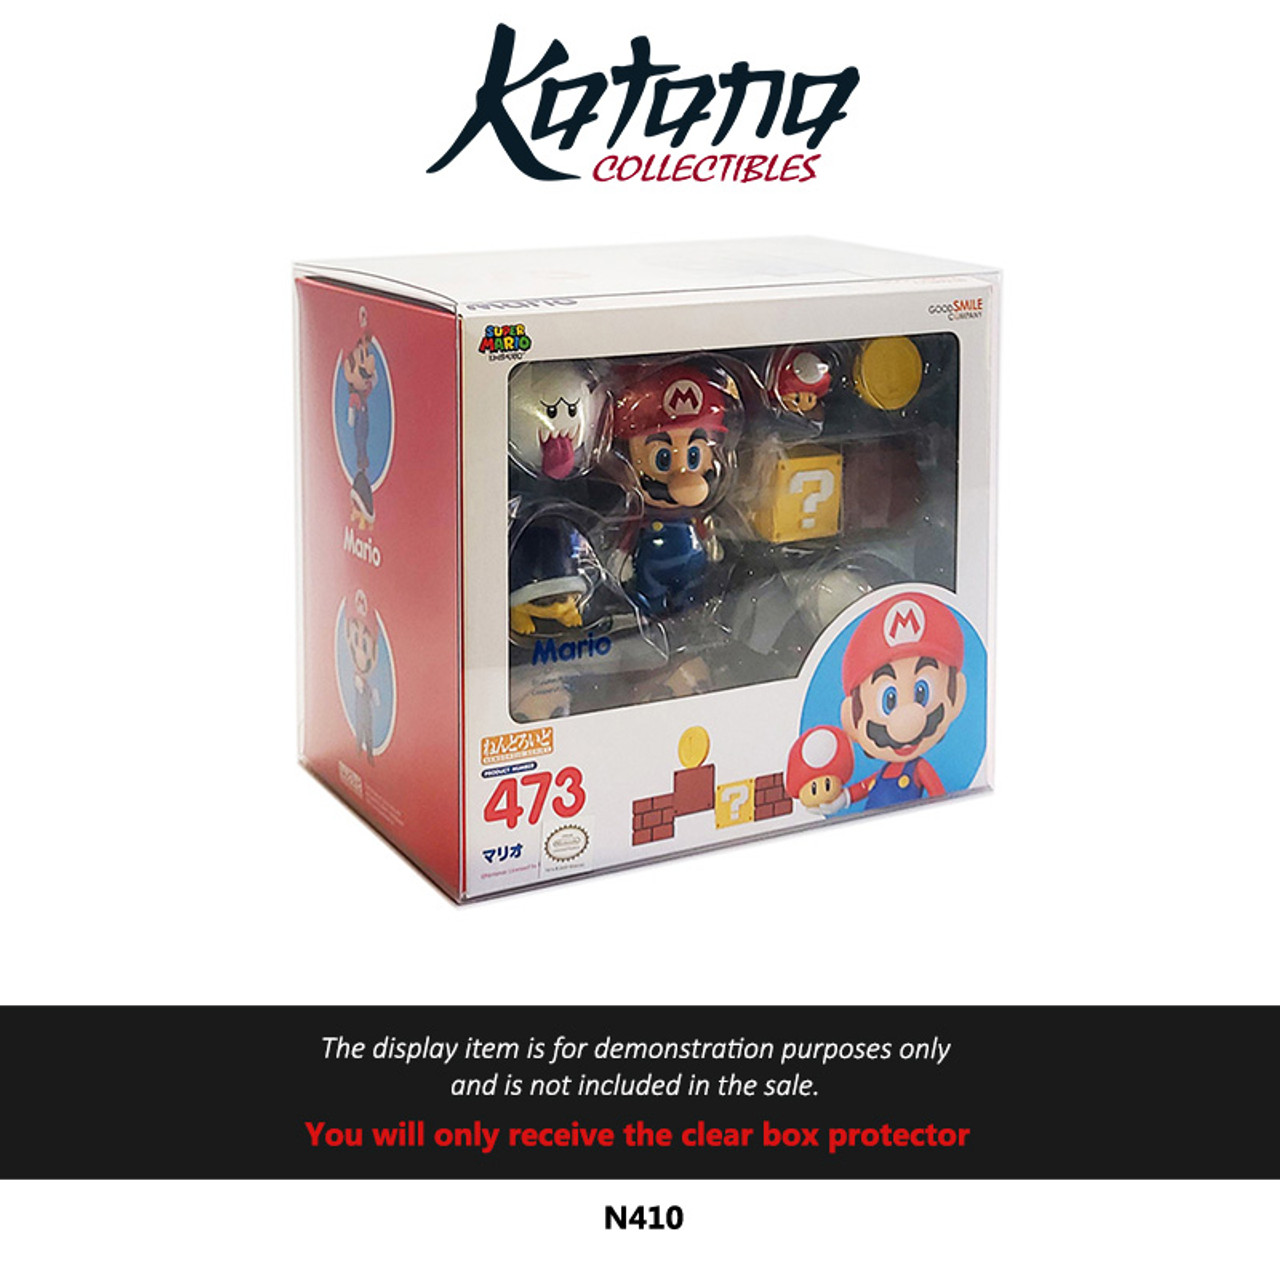 Katana Collectibles Protector For Nendoroid Mario Figure